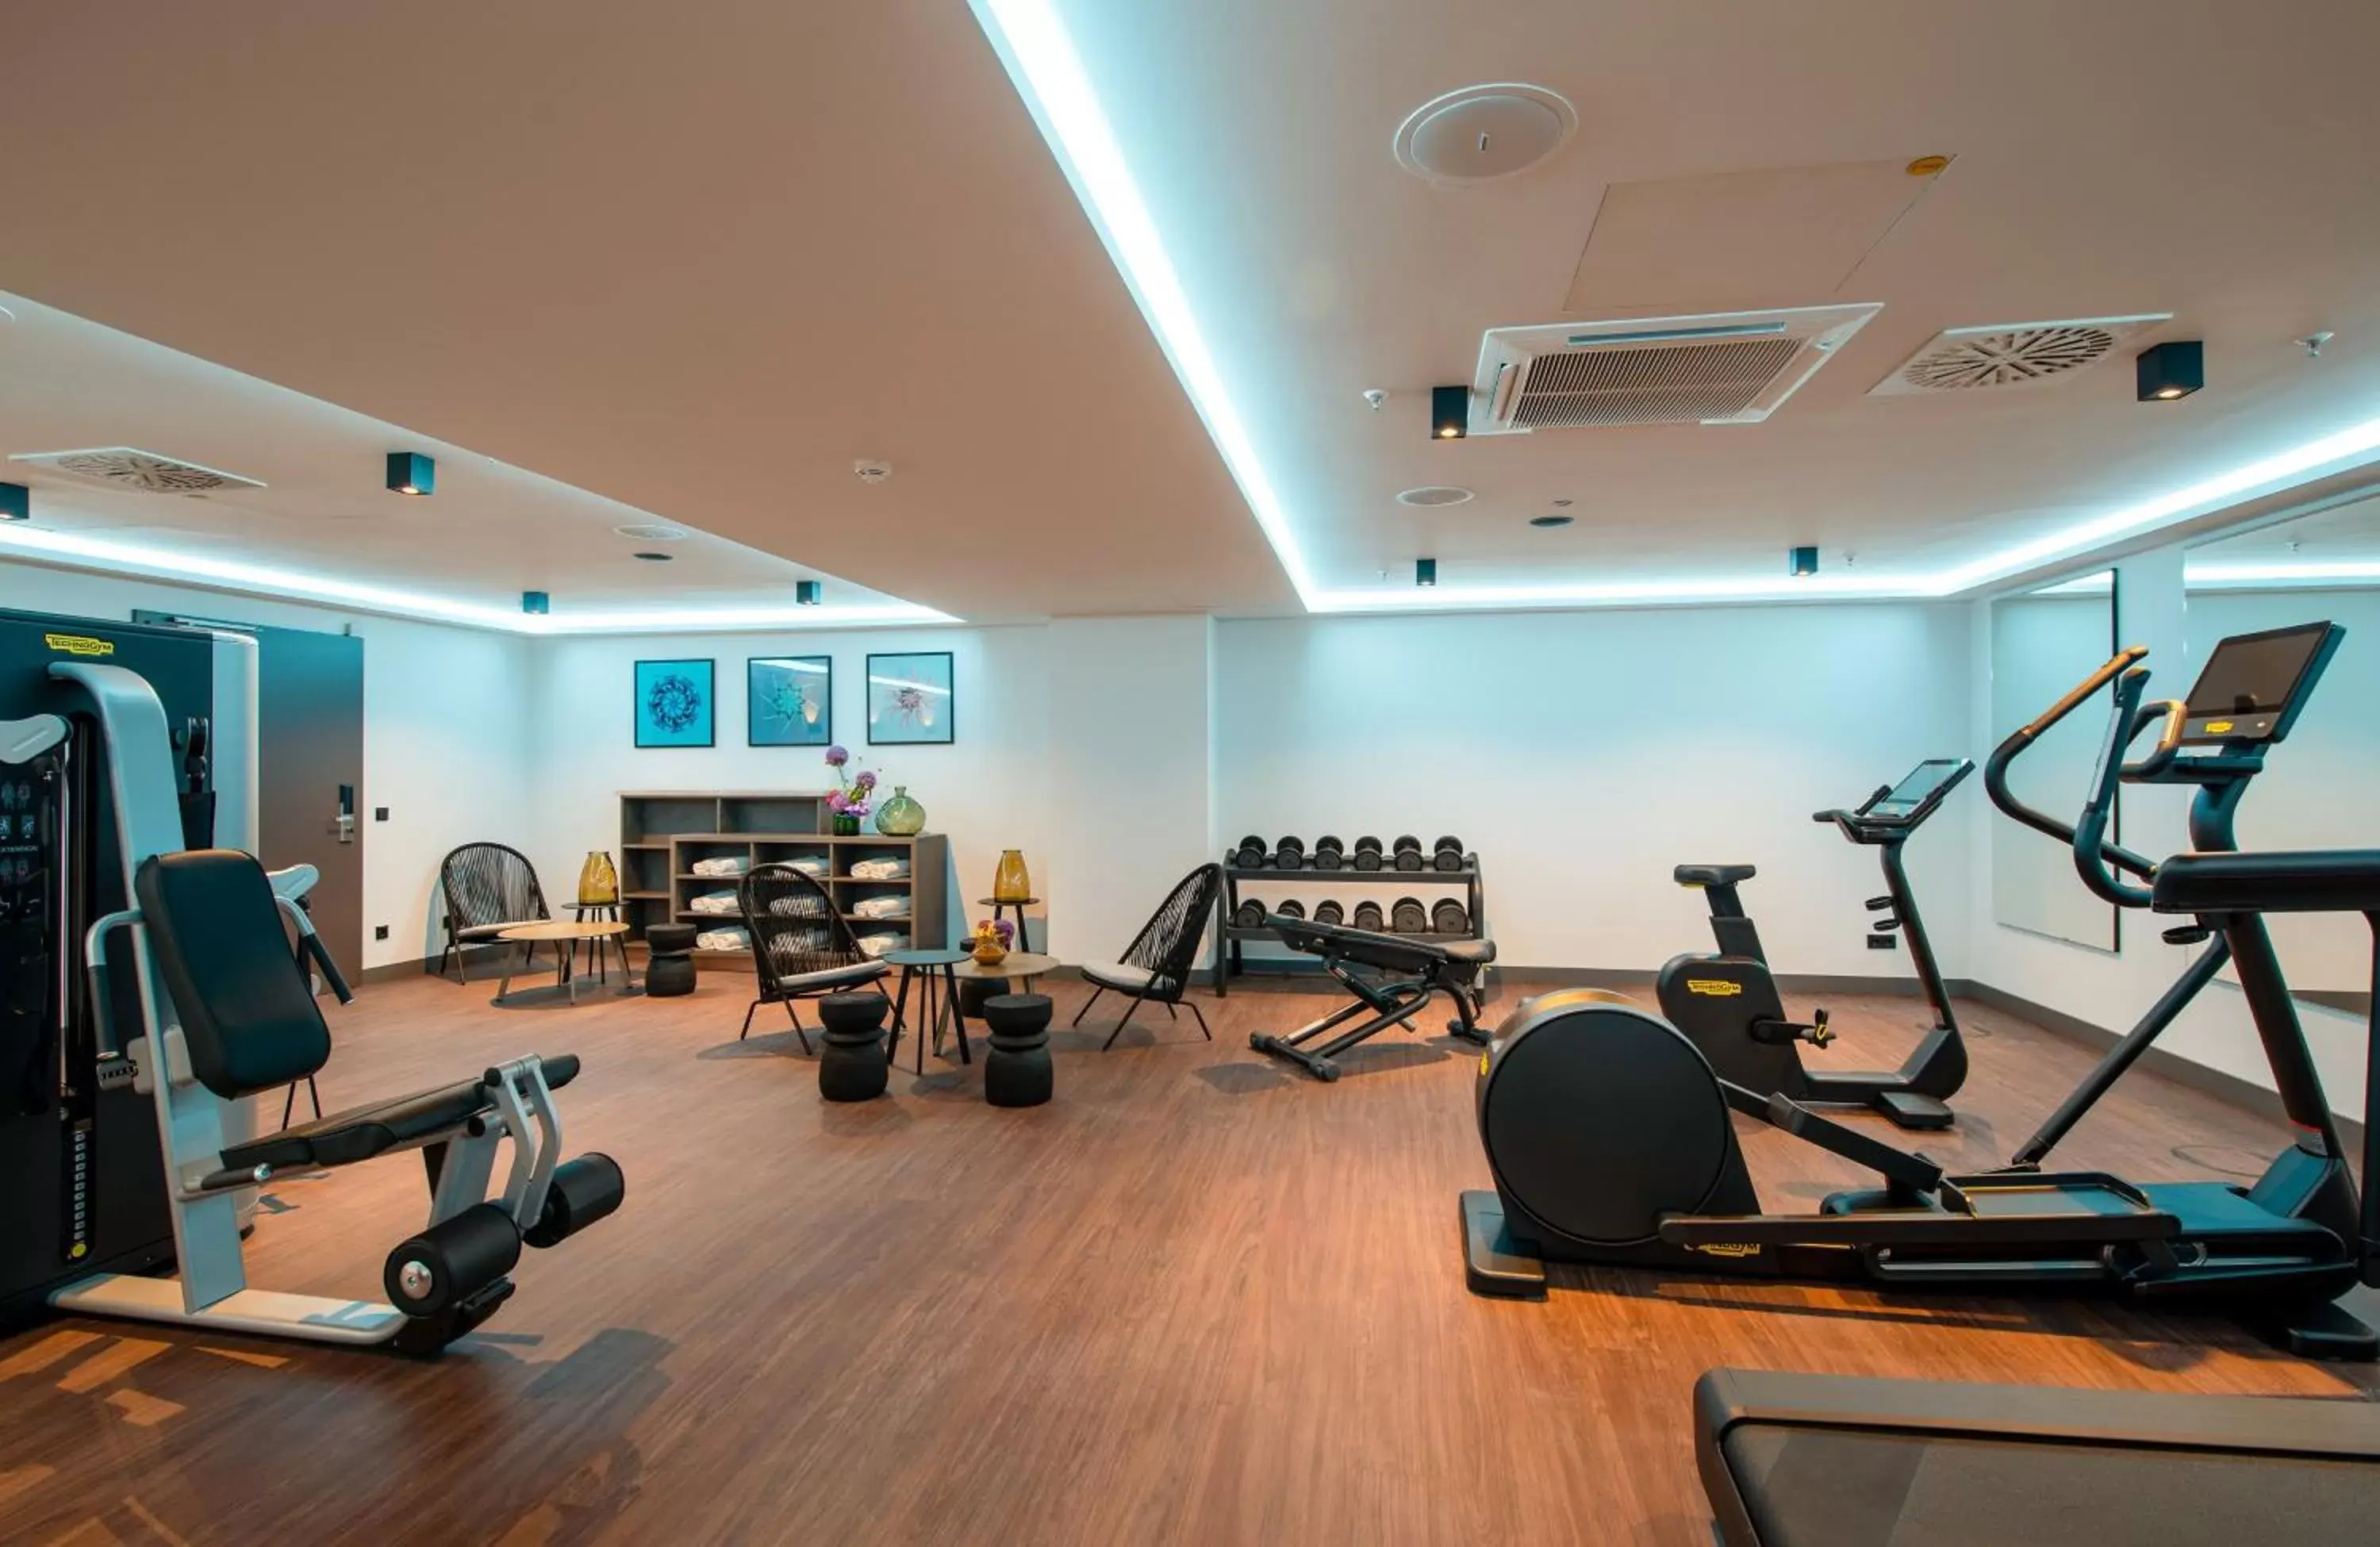 Fitness centre/facilities, Fitness Center/Facilities in Leonardo Royal Hotel Nürnberg